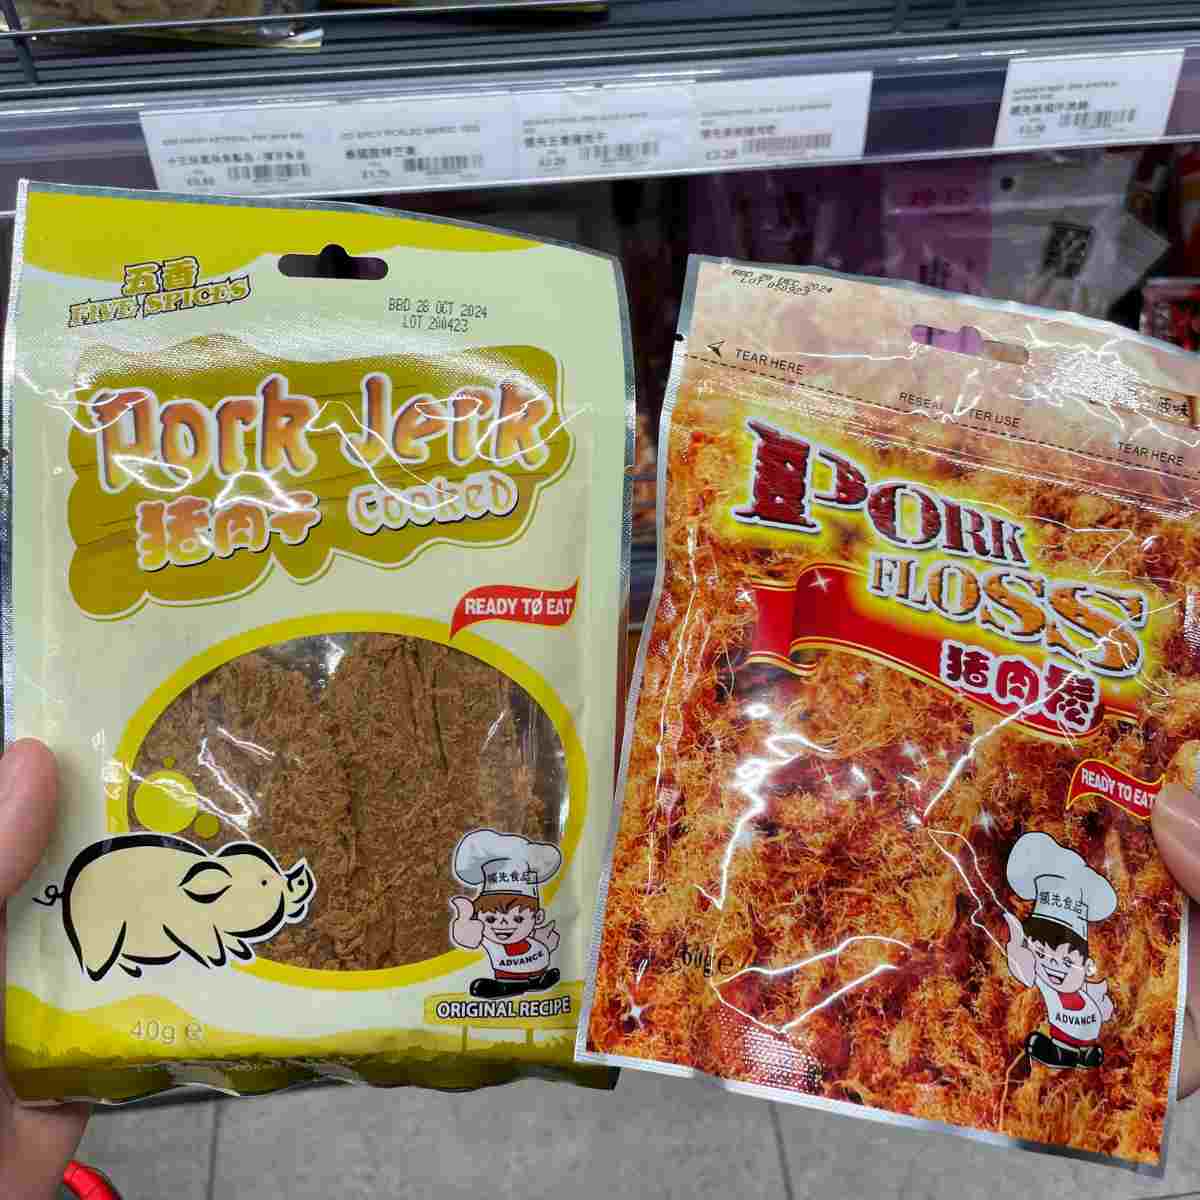 Bak kwa chinese jerky